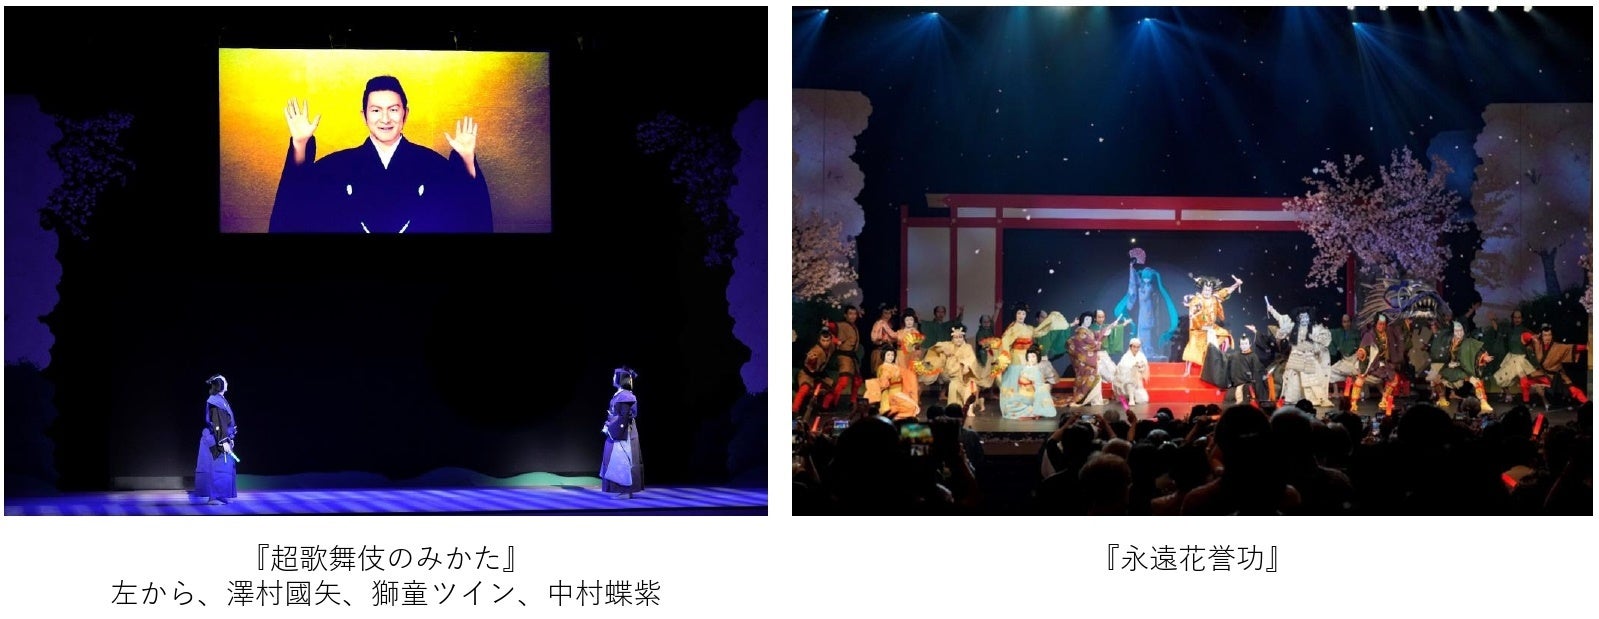 「超歌舞伎2022 Powered by NTT」 全国ツアー展開中！8月13日からは名古屋・御園座で開幕。BS松竹東急では過去作品ノーカット版TV初放送ものサブ画像1